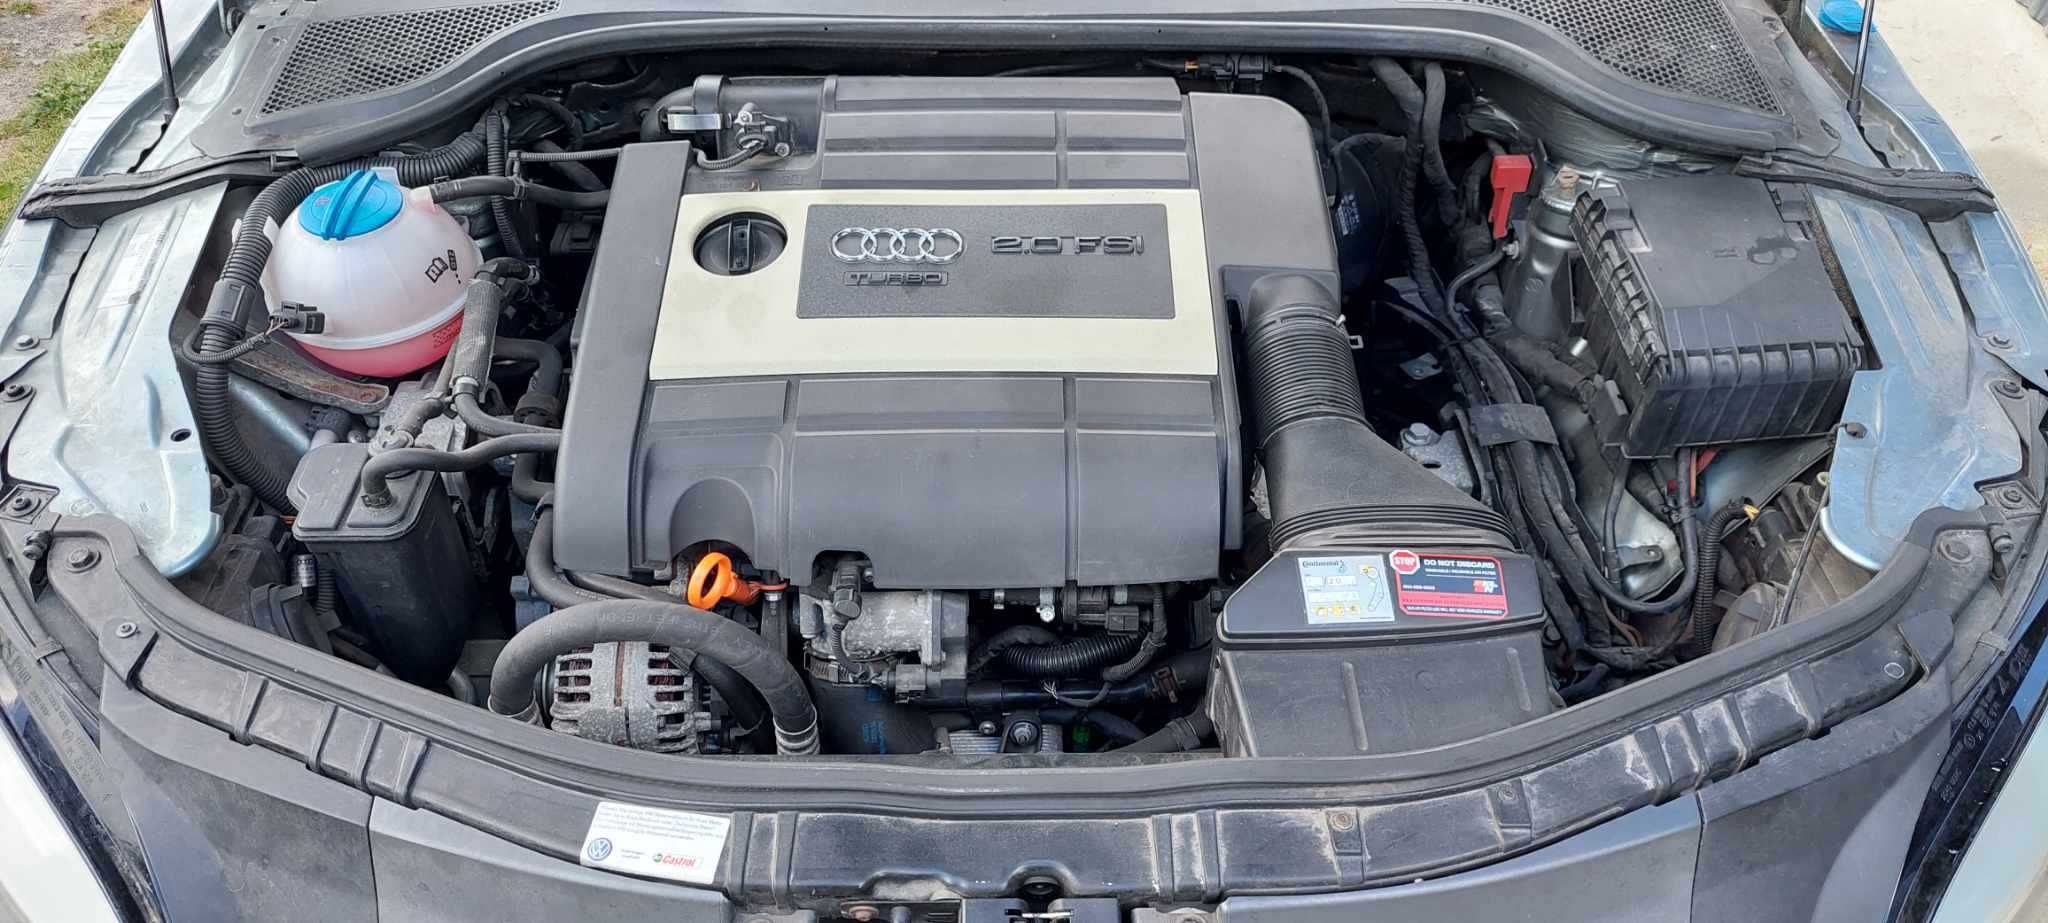 Audi TT 2.0 tfsi 273cv DSG